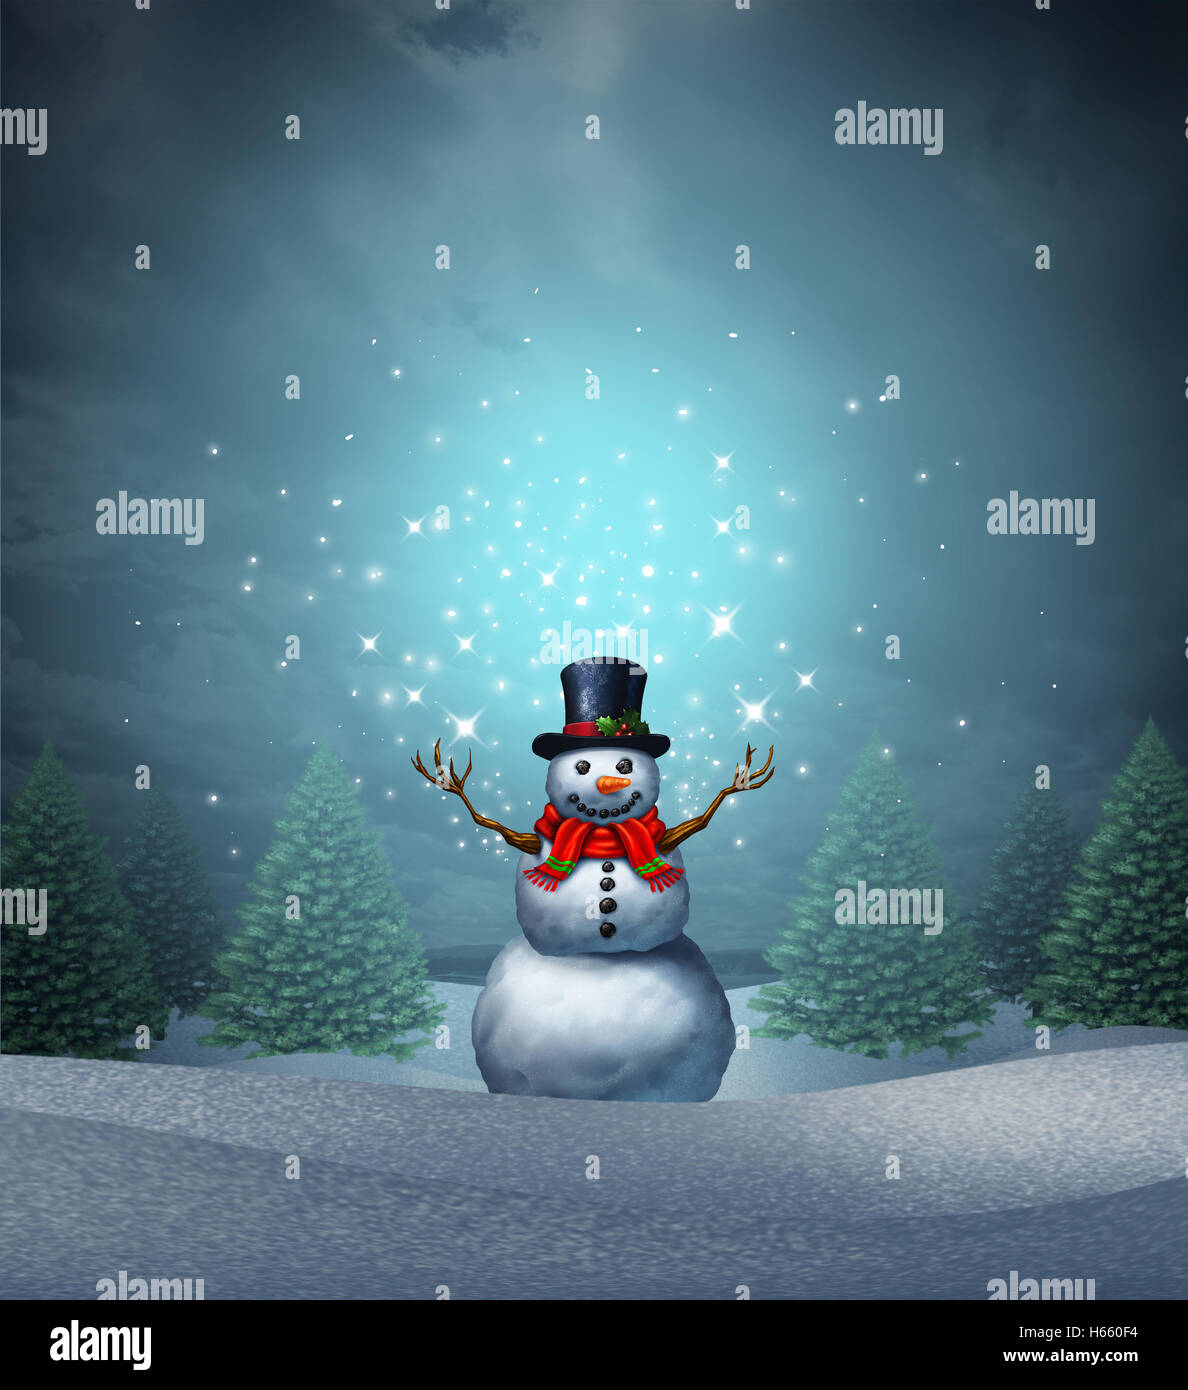 Snowman mágicas vacaciones de invierno como una feliz navidad y un próspero año nuevo tarjeta de felicitación con un lindo feliz personaje de nieve Foto de stock